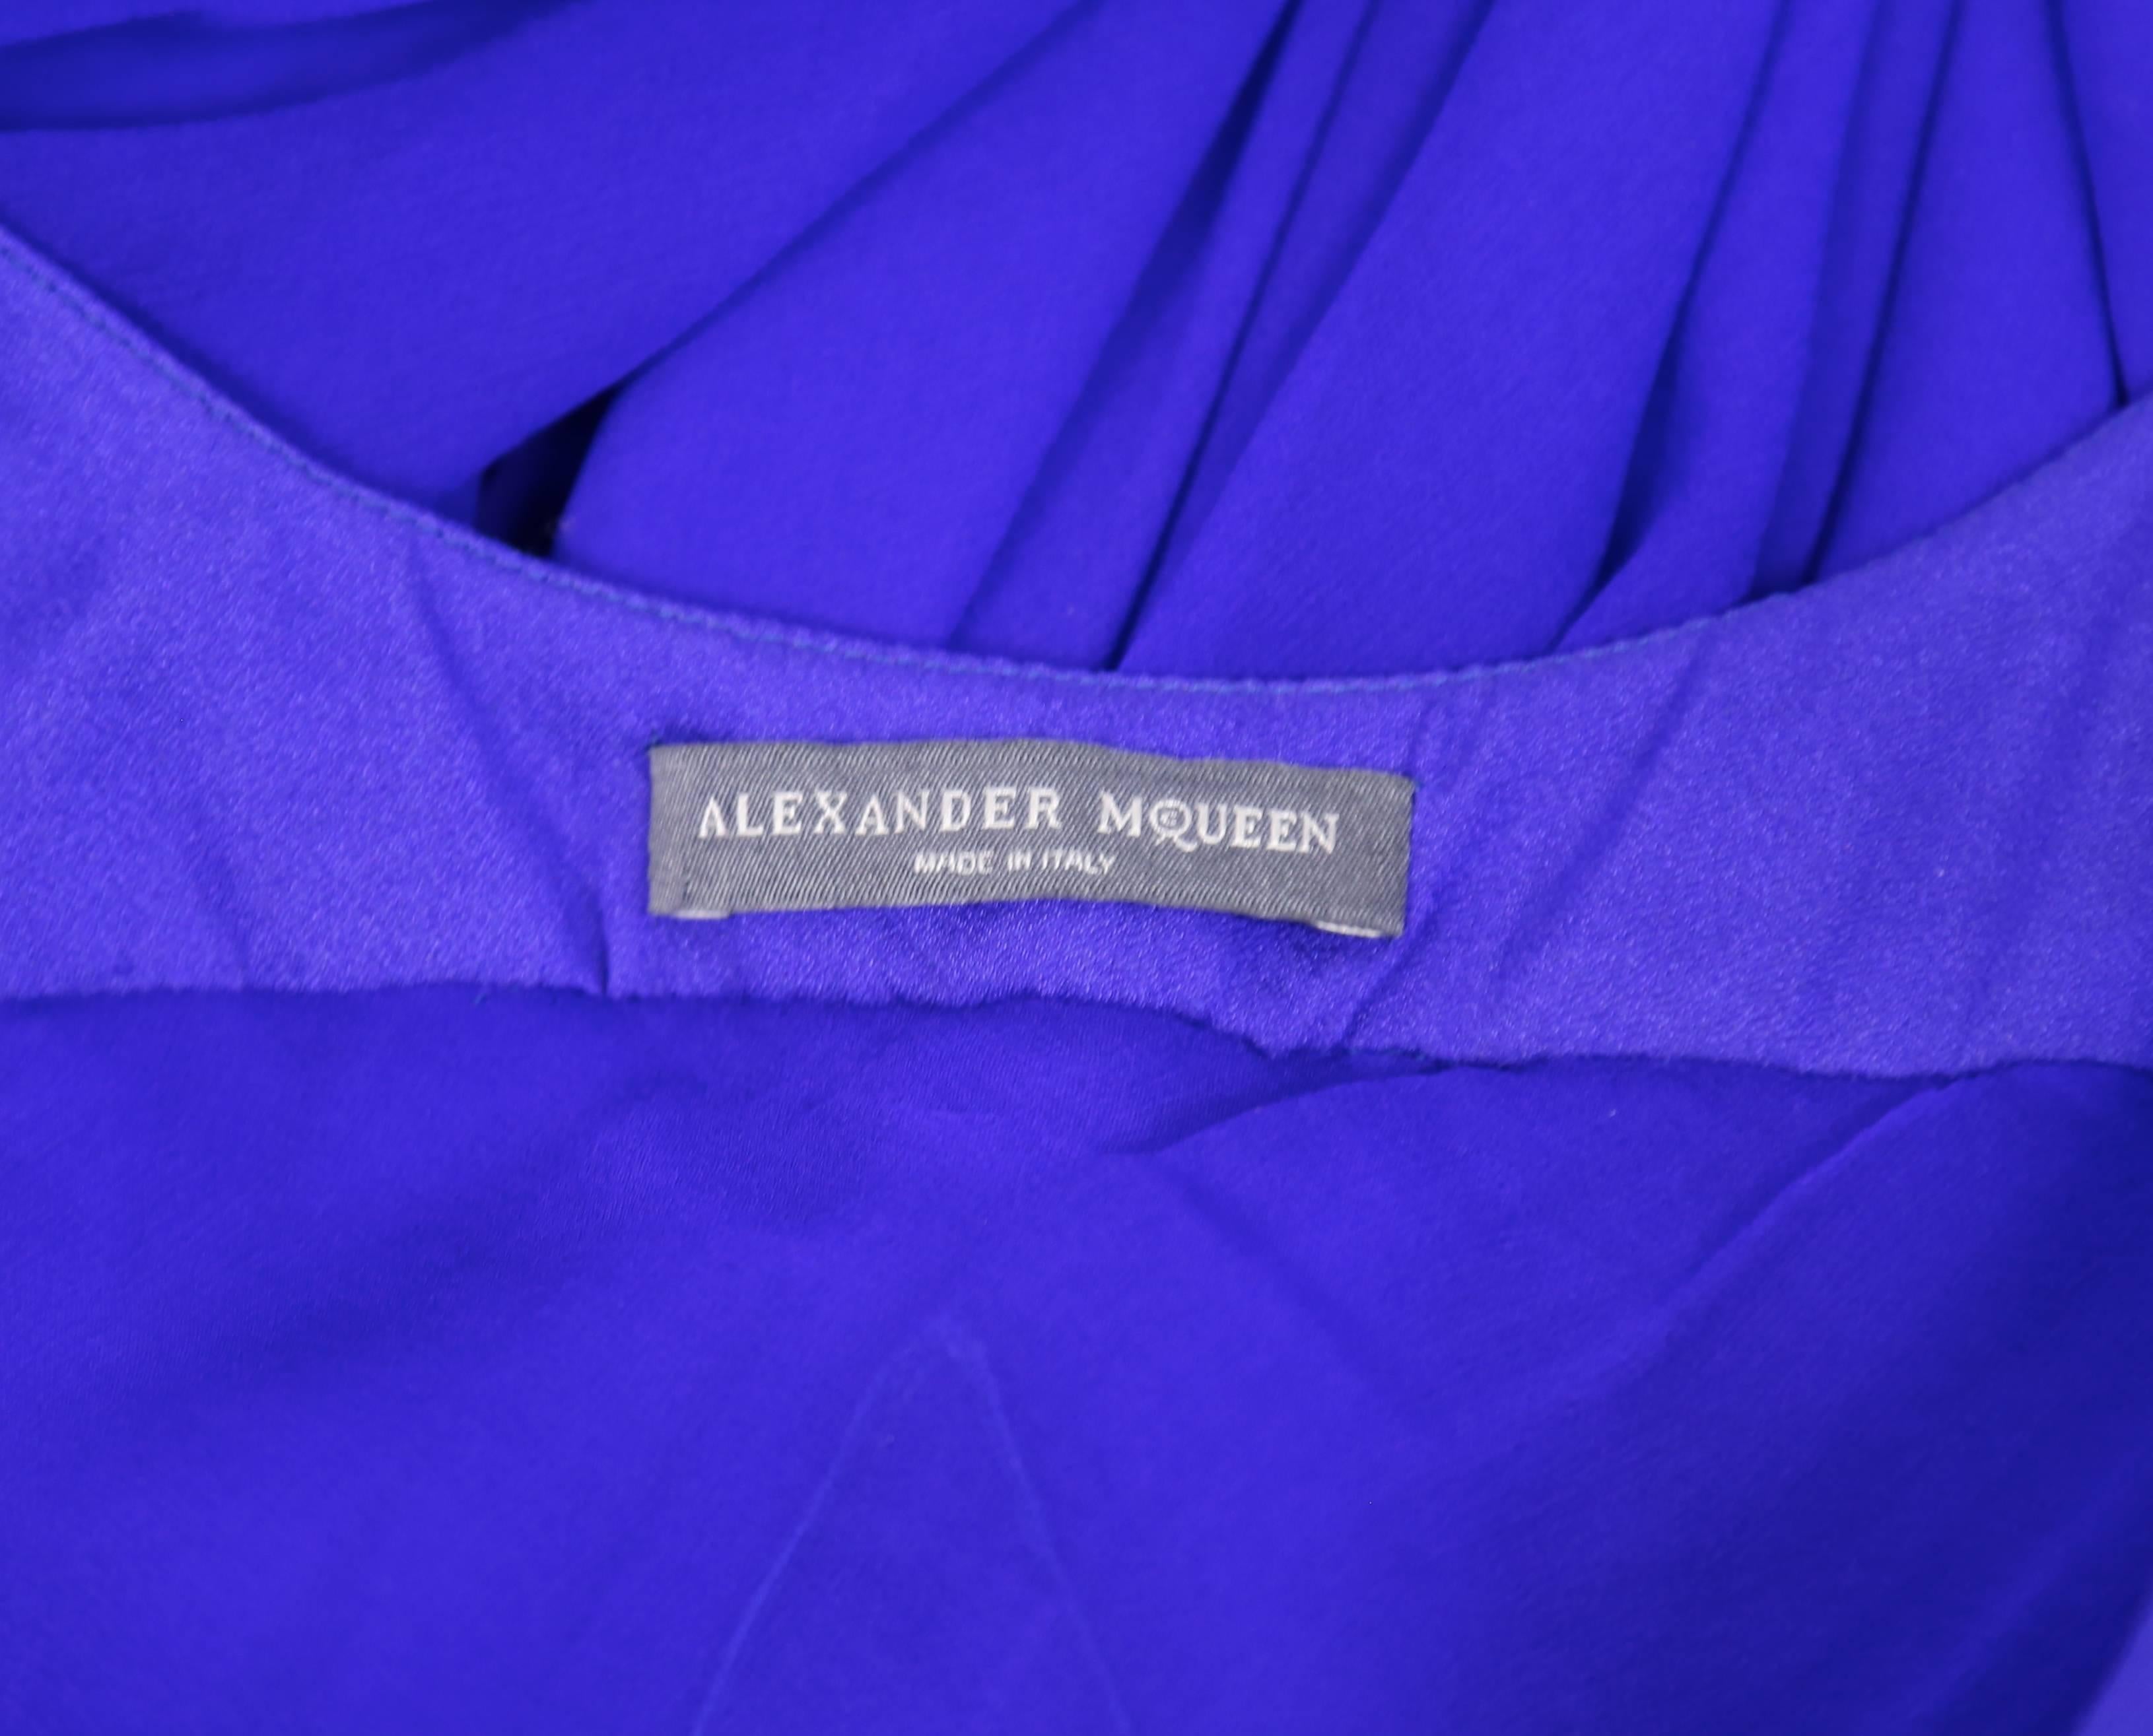 ALEXANDER MCQUEEN silk chiffon cobalt blue asymmetrical gown 1